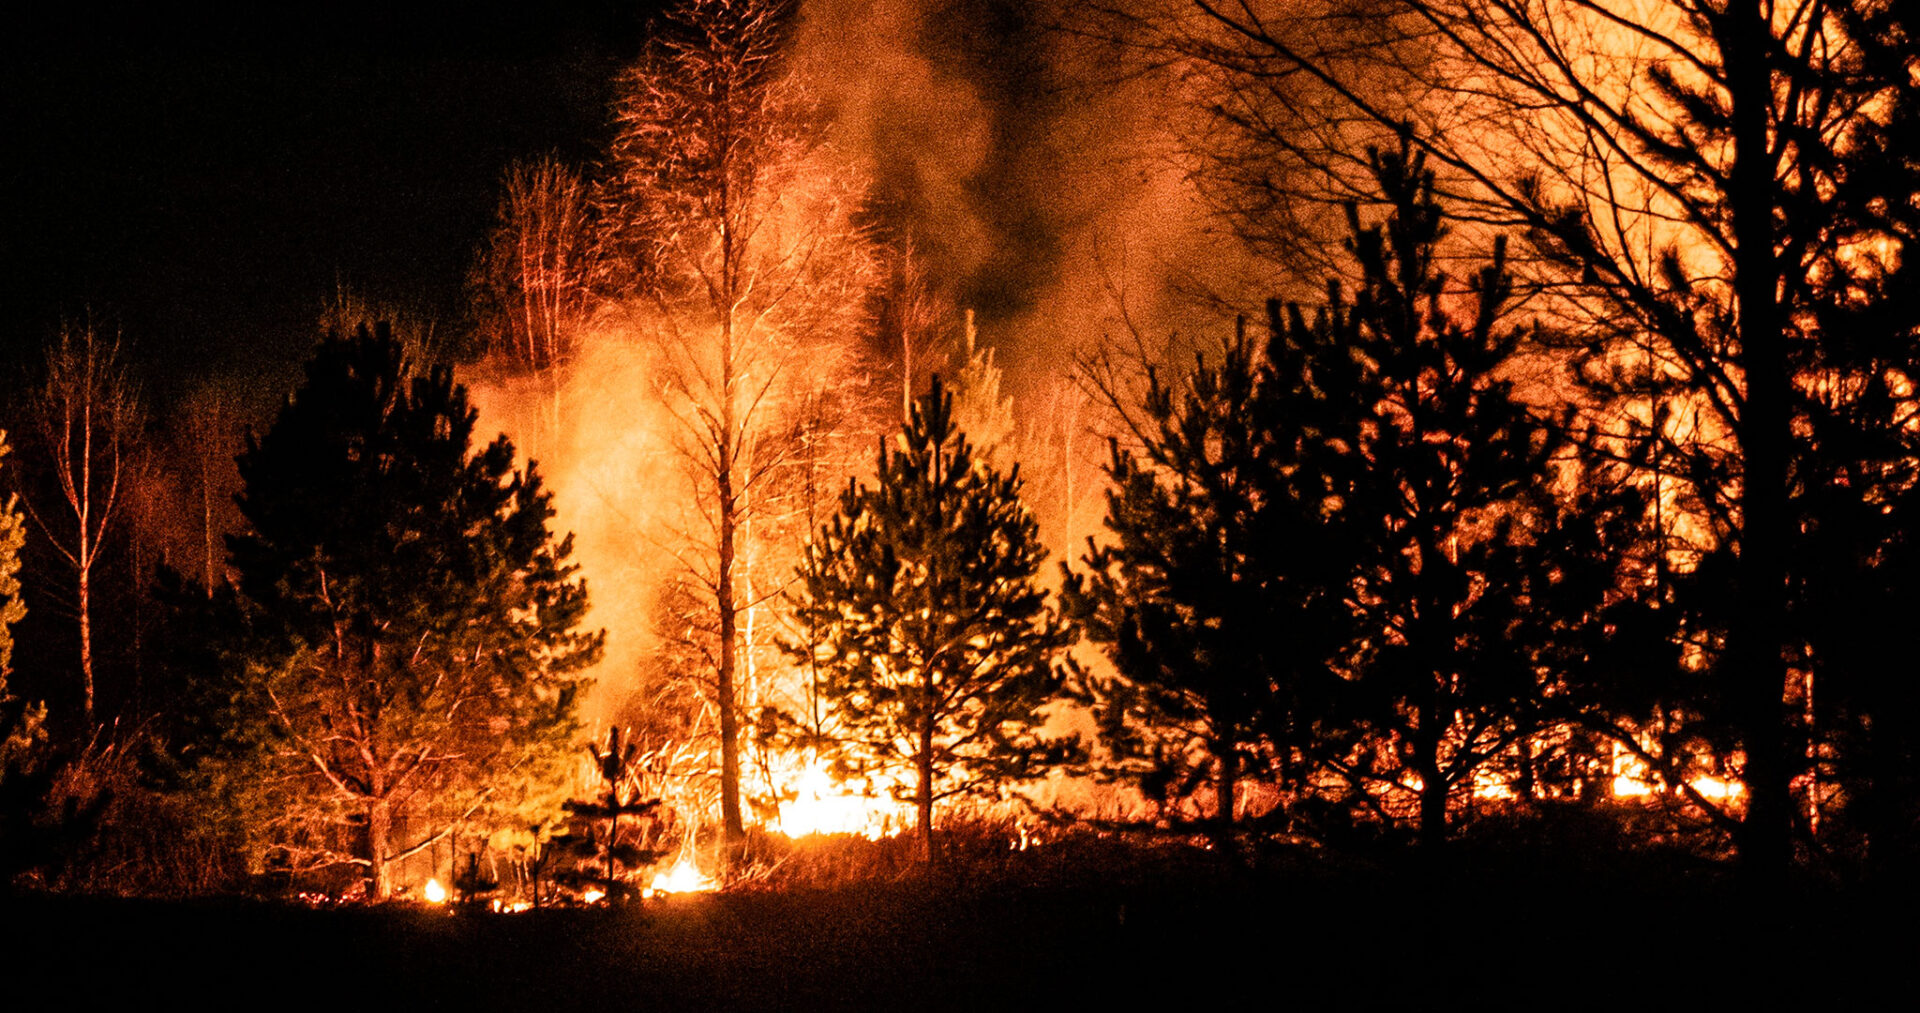 Le aree protette sono particolarmente esposte agli incendi - Openpolis